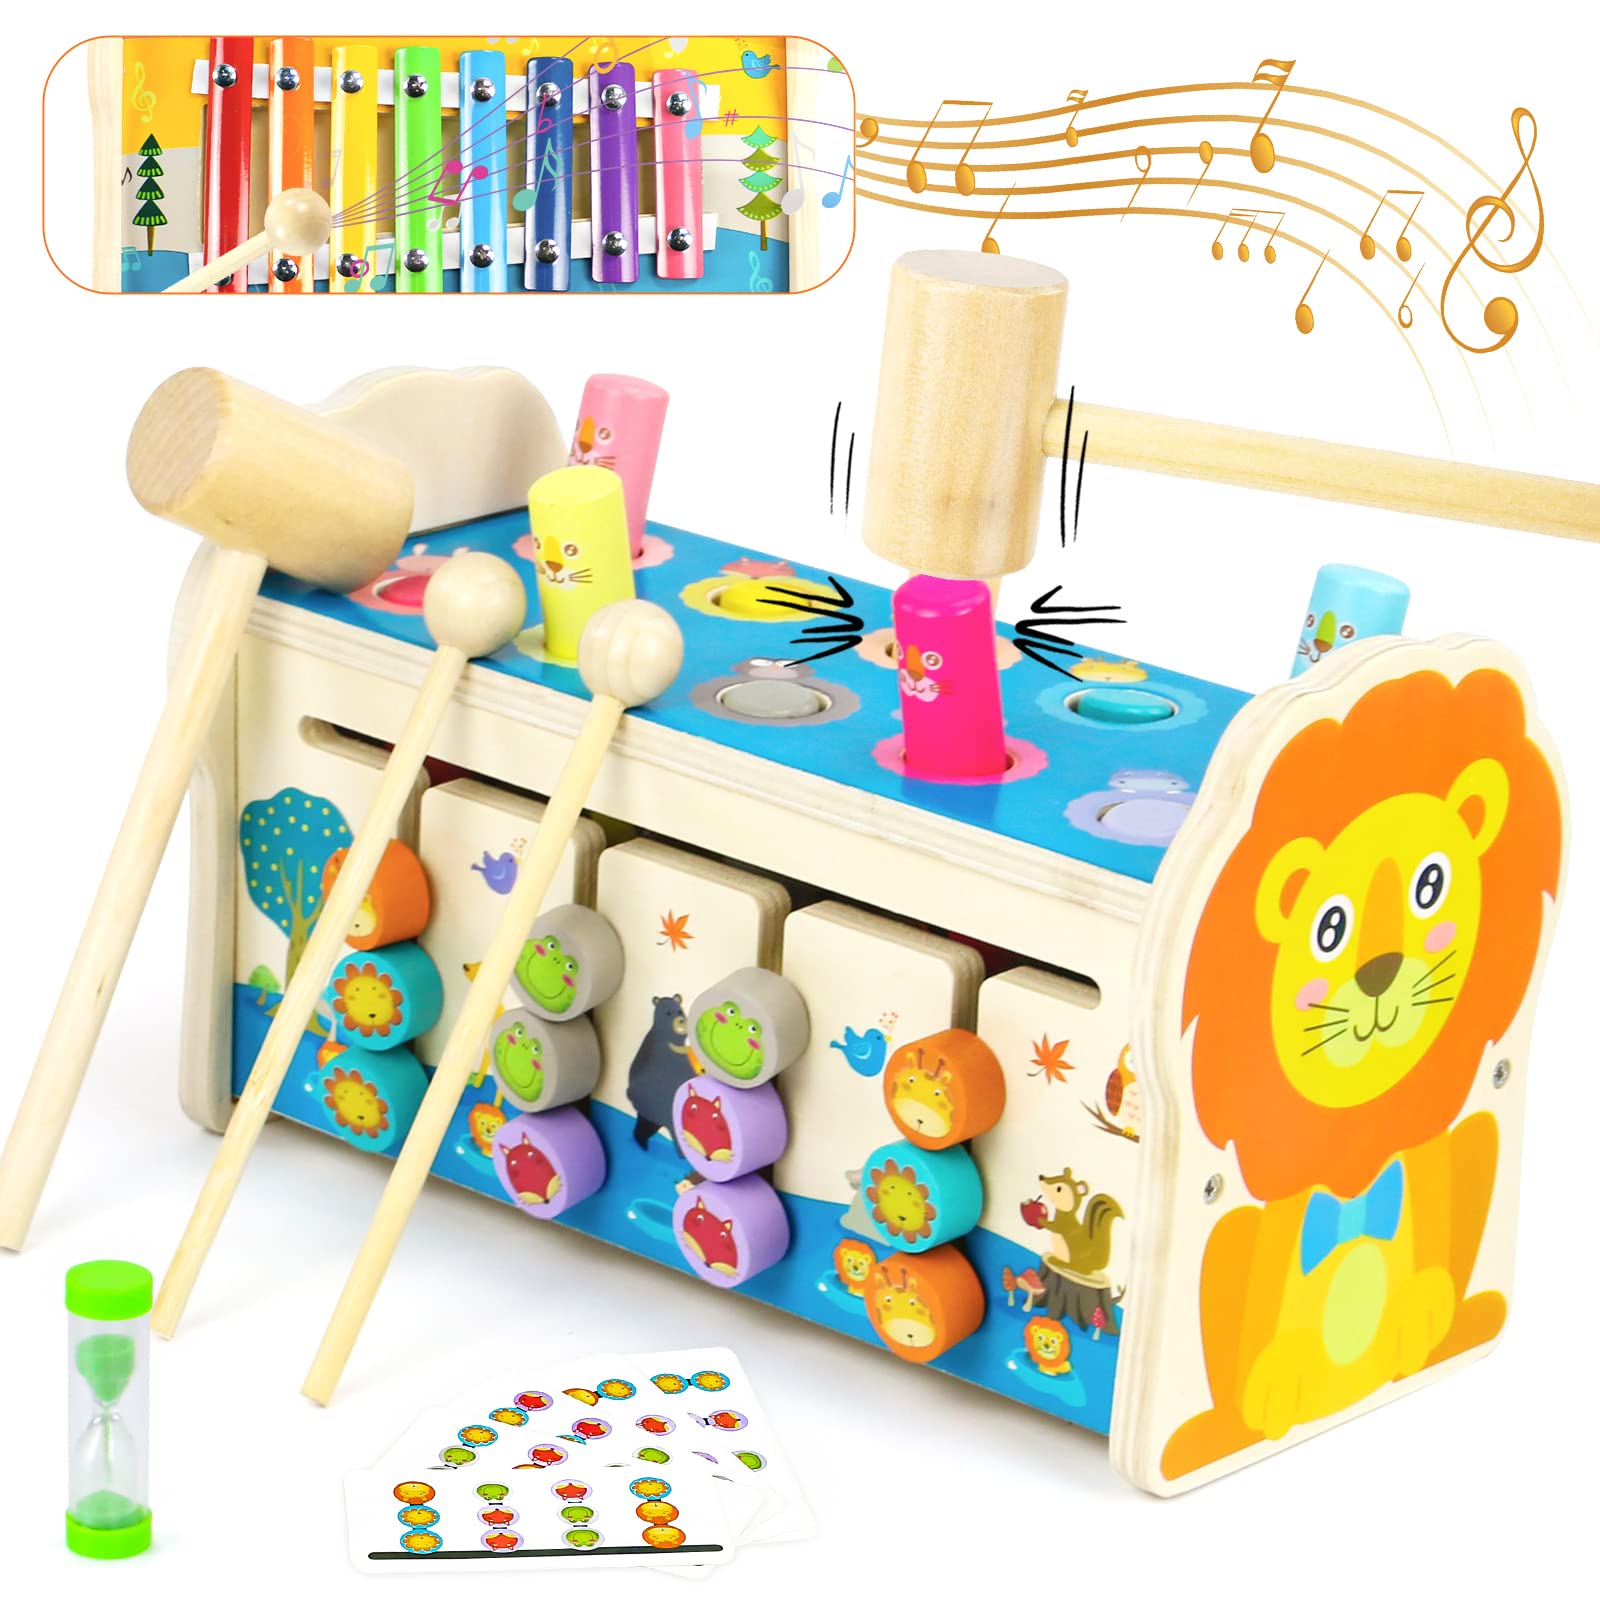 知育玩具 モンテッソーリ 木琴 ハンマートイ 3 IN 1 木のおもちゃ おもちゃ 女の子 男の子 子供 誕生日ランキング 早期開発 指先訓練 音